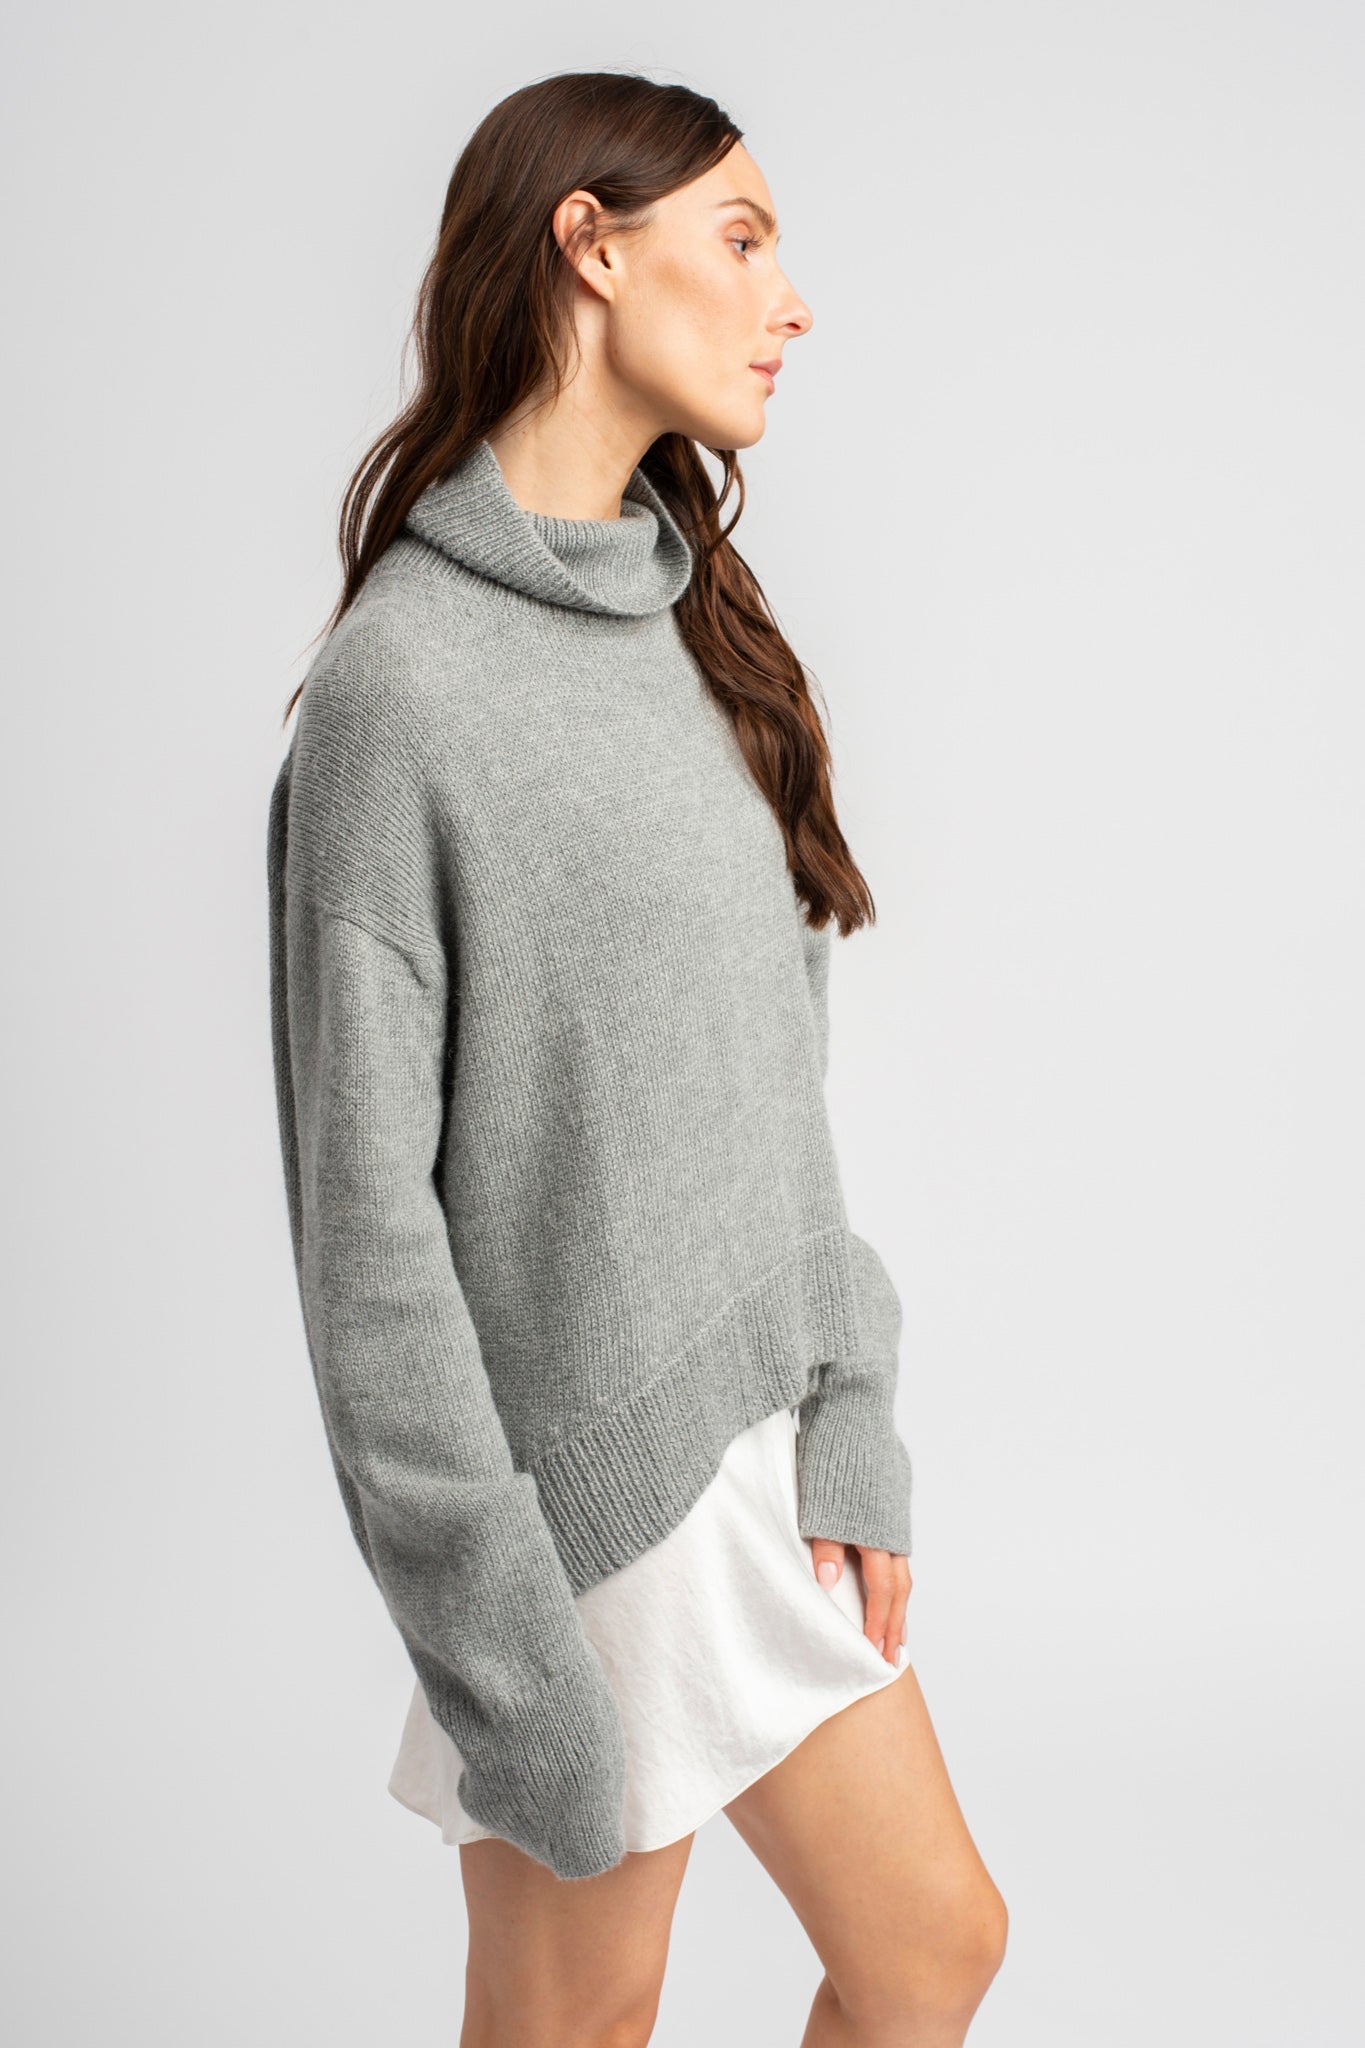 Model wearing turtleneck oversized sweater in light grey alpaca wool, standing side